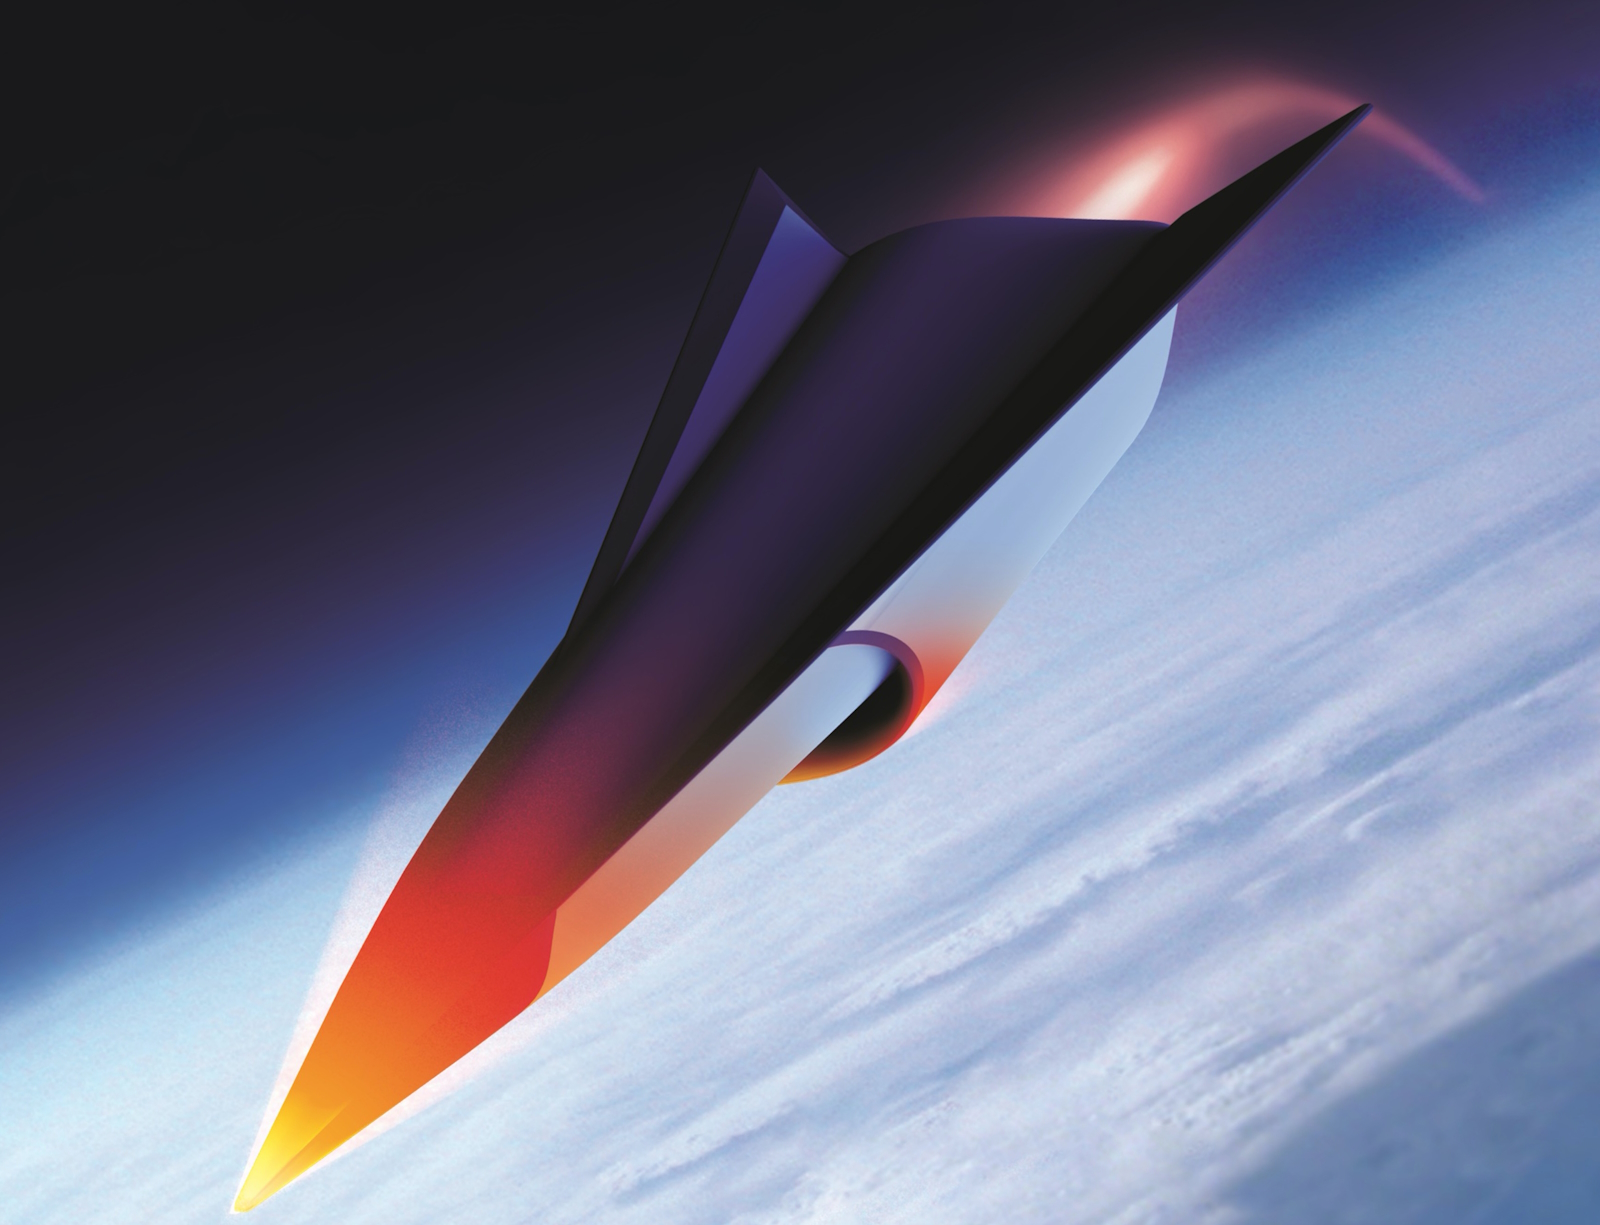 Vue artistique d’un projet de véhicule hypersonique. © GE Aerospace